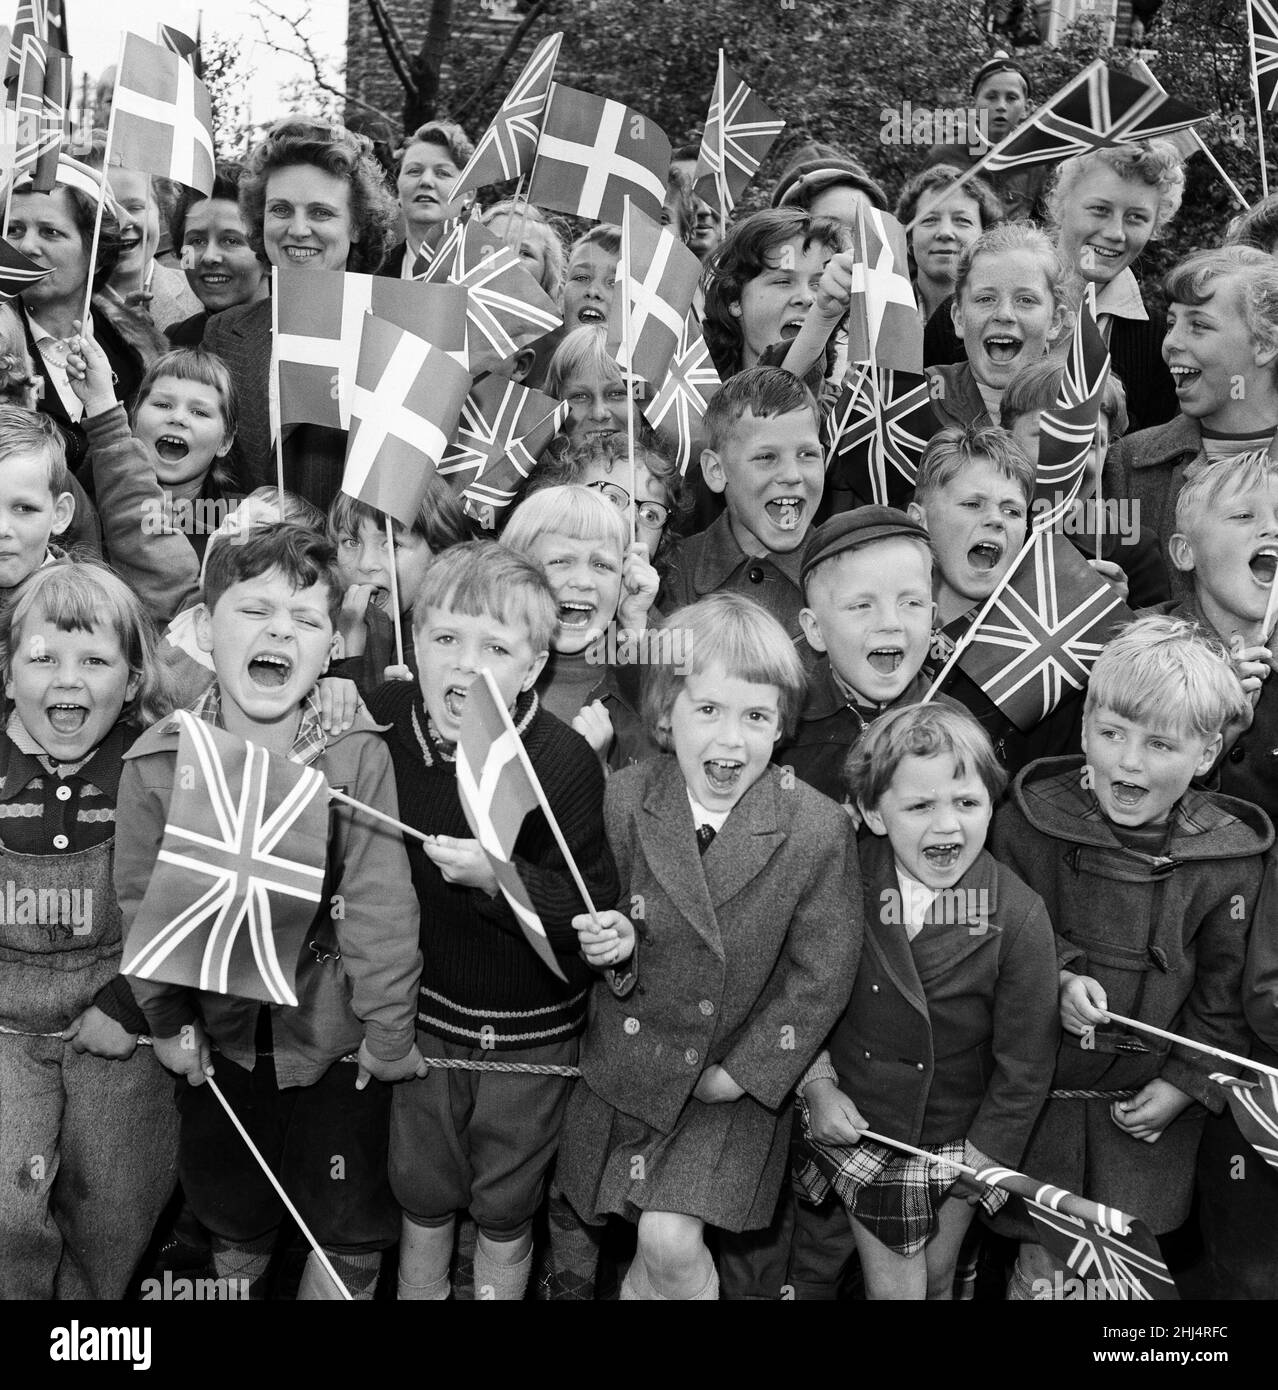 Königin Elizabeth II. Und Prinz Philip, Herzog von Edinburgh, besuchen Dänemark. Kinder mit Union Jack-Fahnen und dänischen Flaggen jubeln, wenn Königin Elizabeth II. Und Prinz Philip das Erholungszentrum besuchen. 22nd Mai 1957. Stockfoto